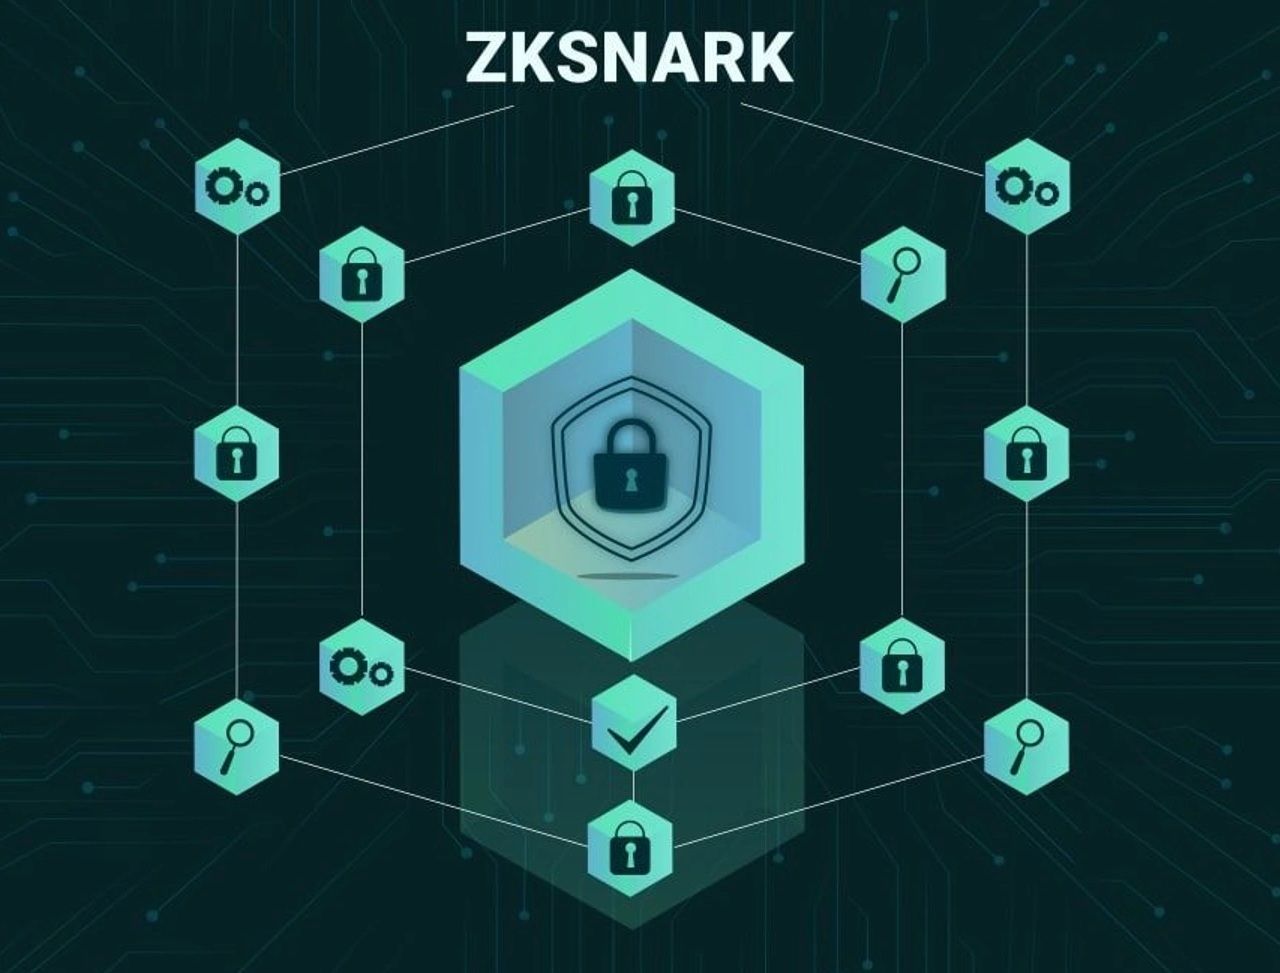 Công nghệ Zk-snark được ứng dụng phổ biến trong các giao thức blockchain